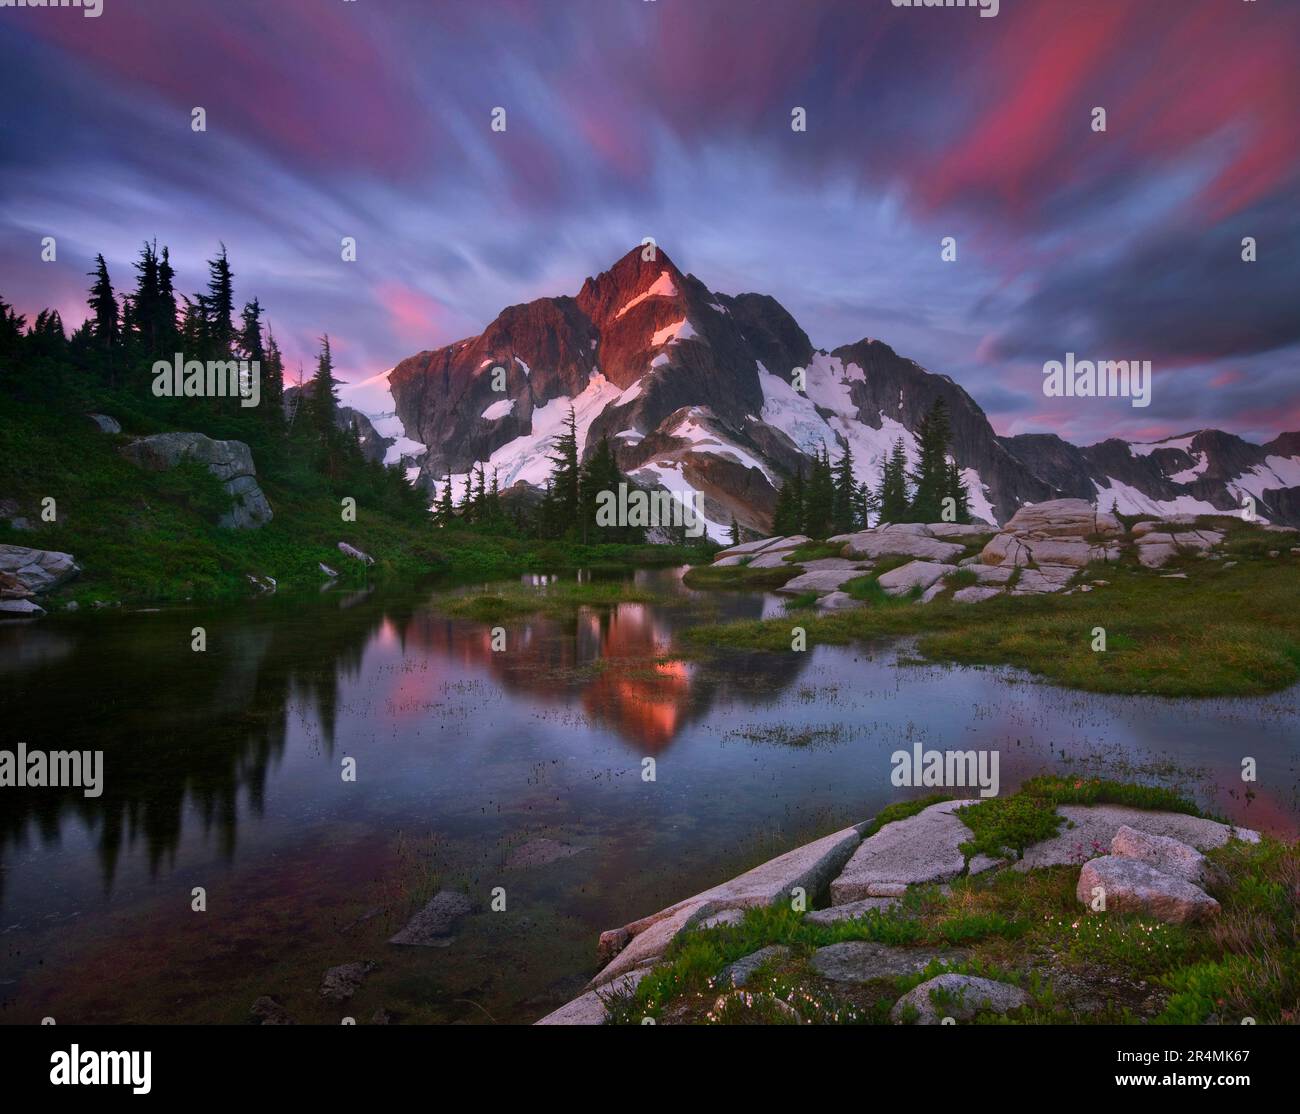 Ein atemberaubender Blick auf den Sonnenaufgang zum Whatcom Peak im North Cascades National Park wurde mit einer langen Exposition aufgenommen, die Wolkenbewegung und den Gipfel vervollständigt. Stockfoto